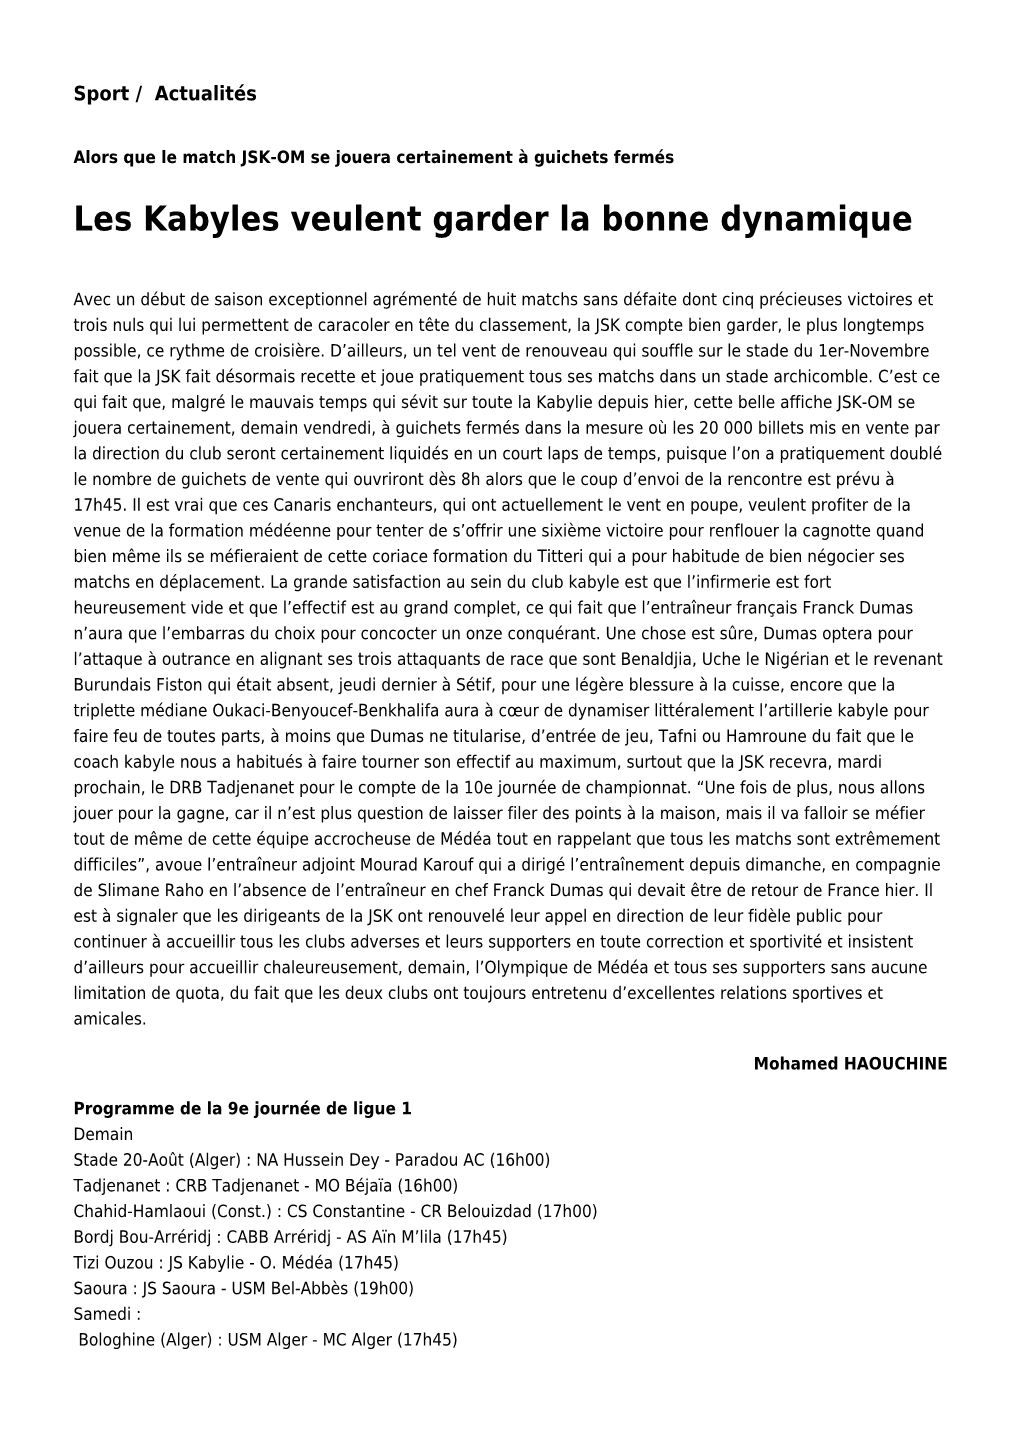 Les Kabyles Veulent Garder La Bonne Dynamique